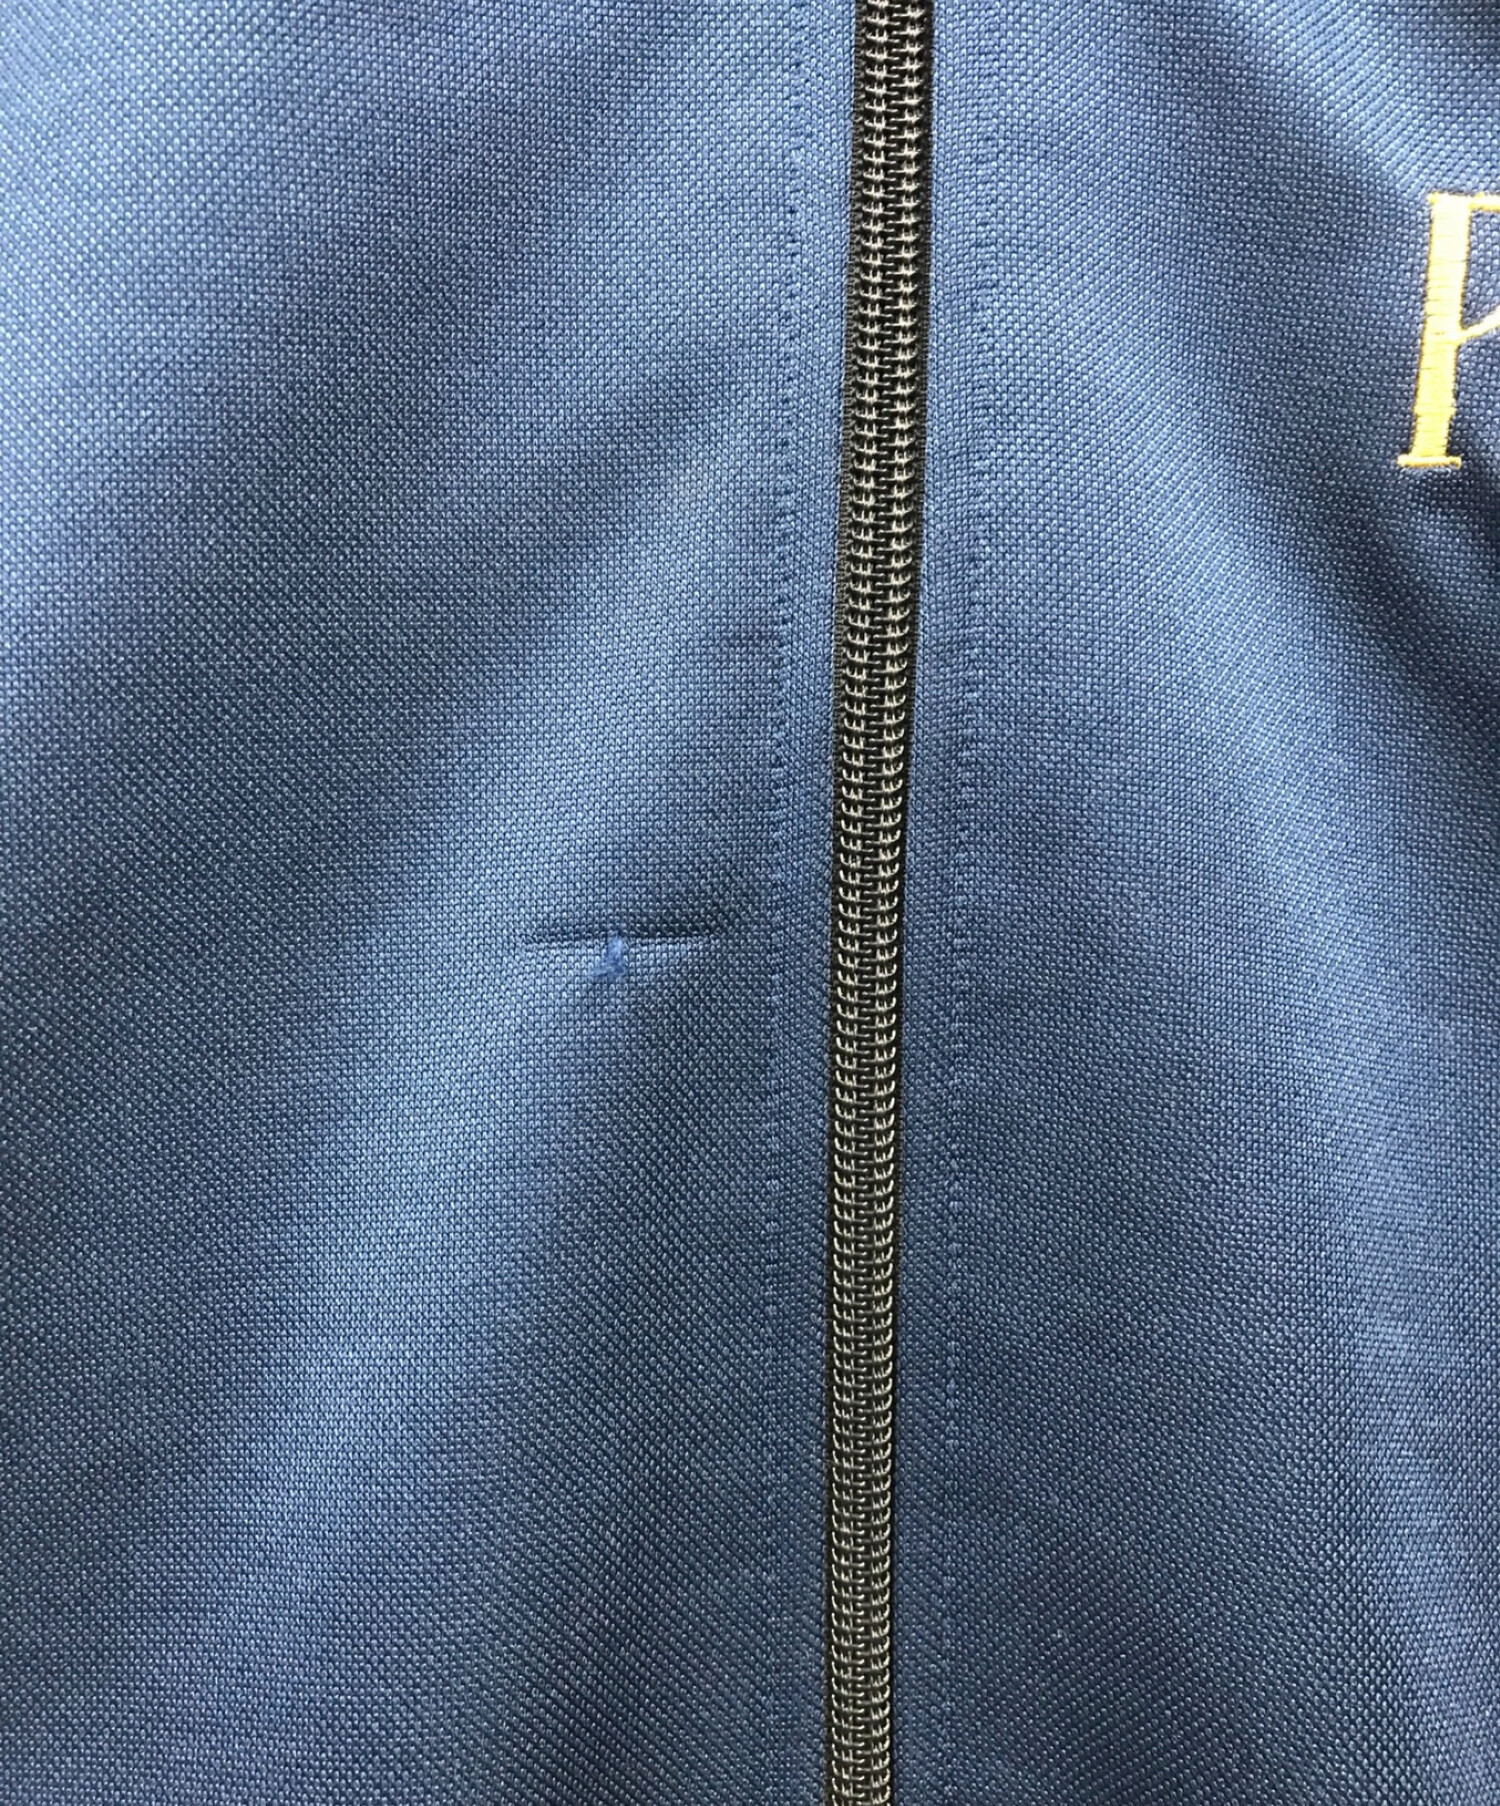 東洋エンタープライズ (トウヨウエンタープライズ) 刺繍トラックジャケット ネイビー サイズ:S